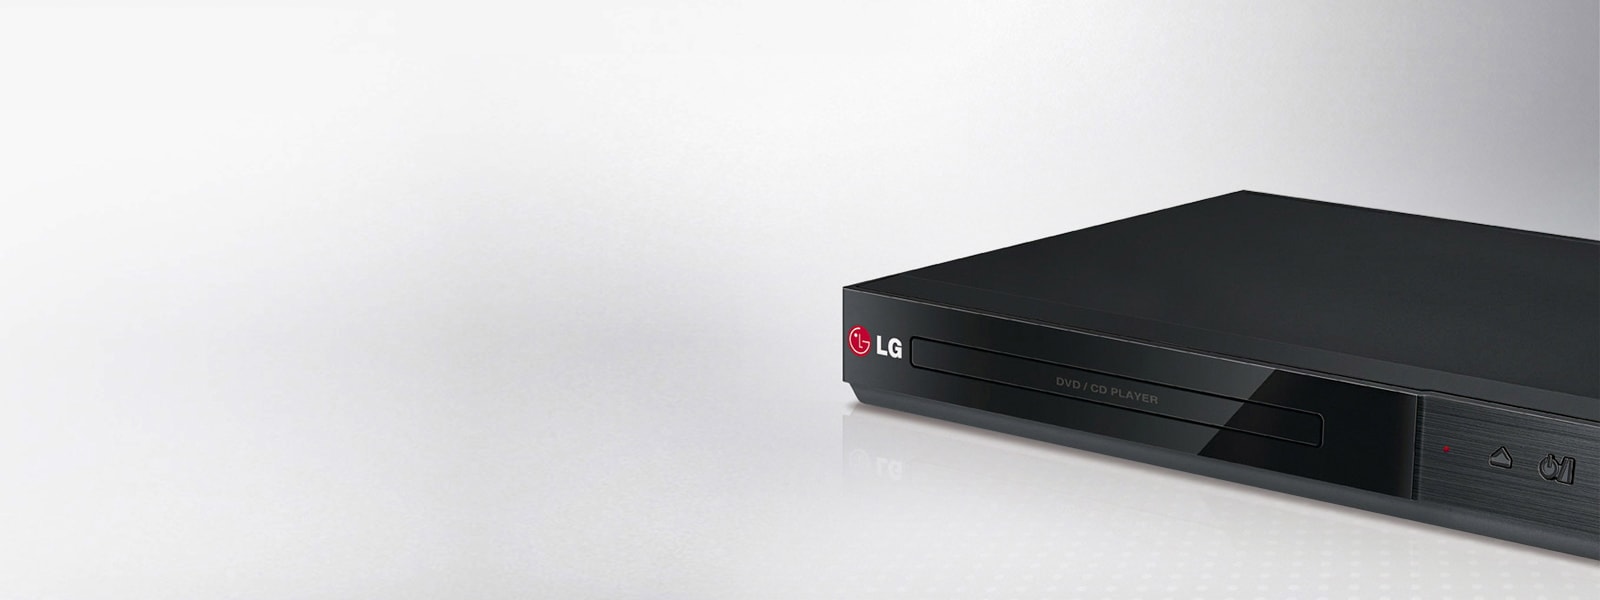 LG DP889: portaretratos digital que incluye reproductor de DVD!